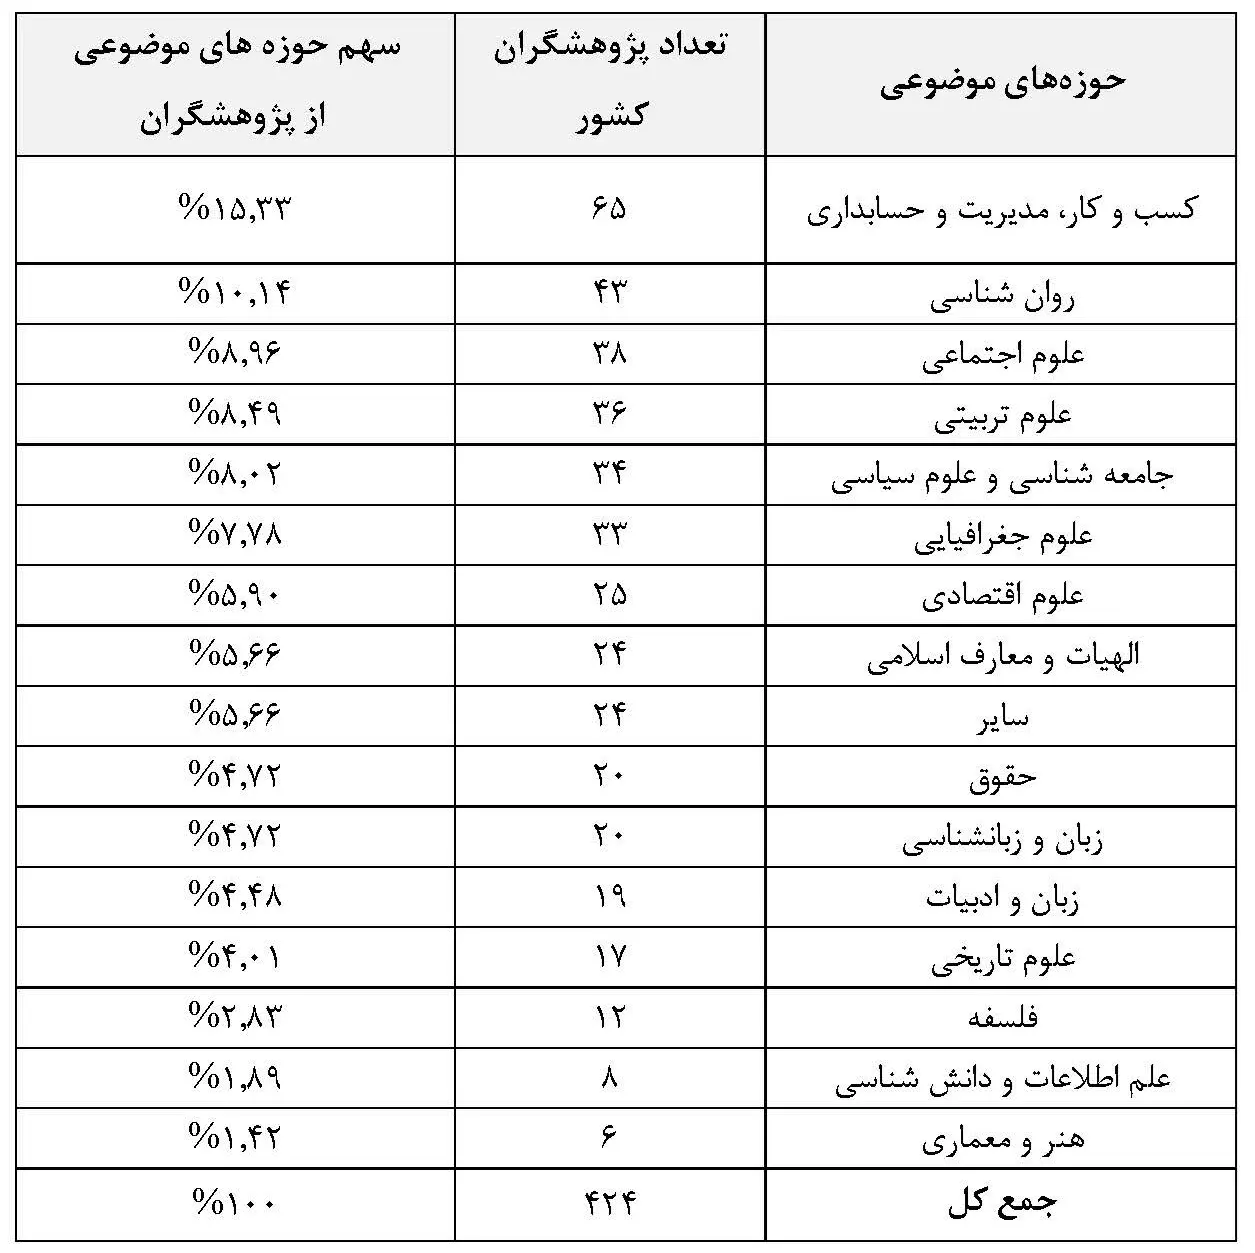 ۴۲۴ پژوهشگر ایرانی جزو پژوهشگران پراستناد حوزه علوم انسانی، علوم اجتماعی، هنر و معماری قرار گرفتند